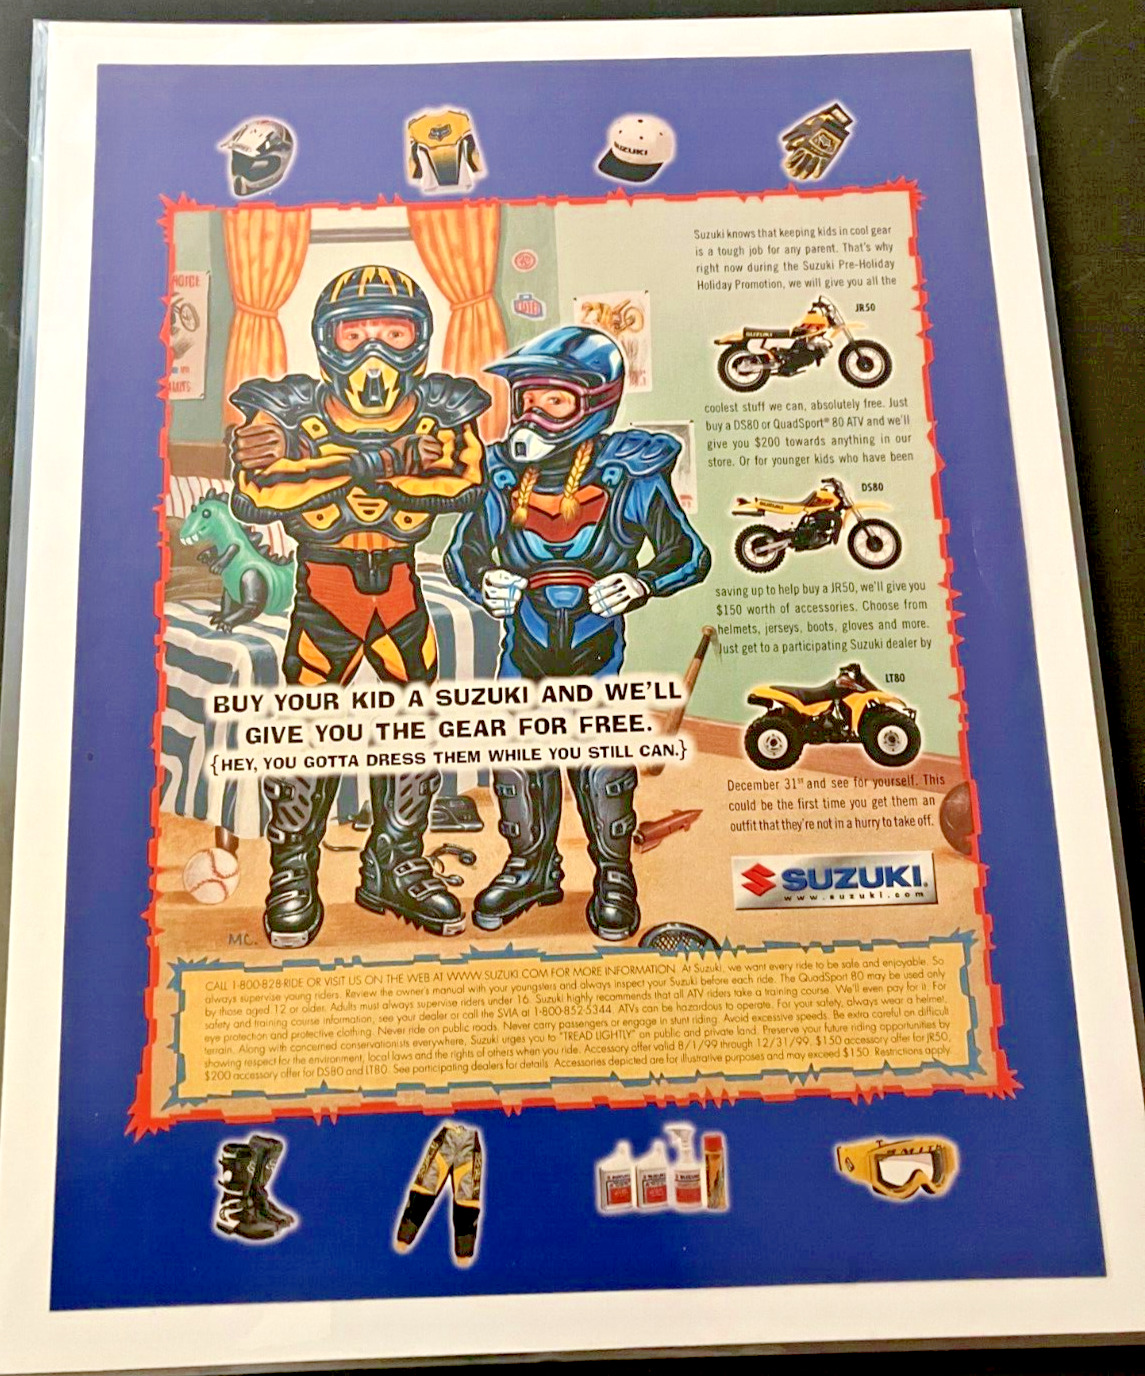 Suzuki Motorcycles & ATVs - Vintage Original 1999 Print Ad - JR50 DS80 LT80 MINT